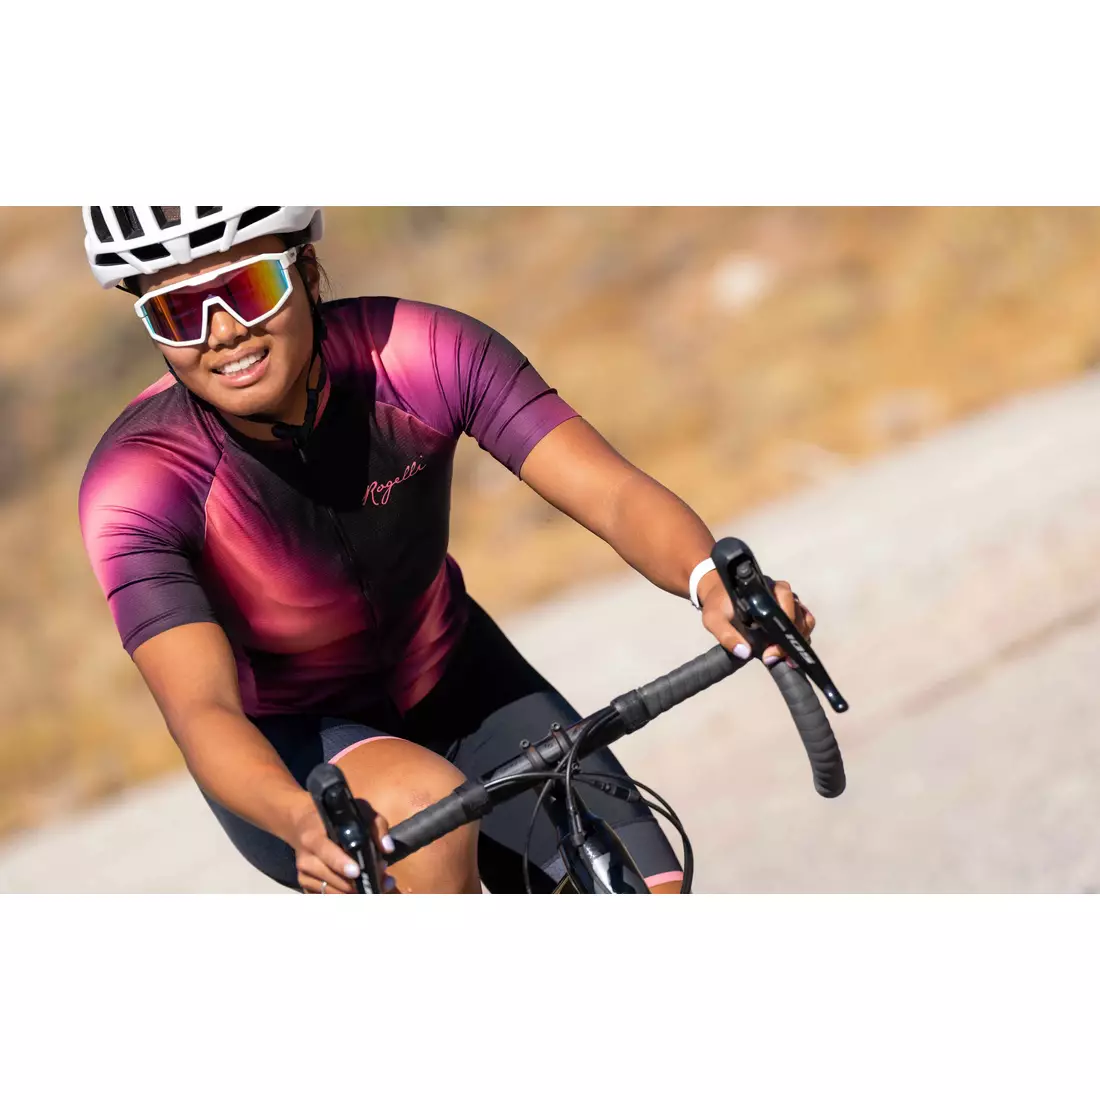 Dámský cyklistický dres Rogelli AURORA vínové a korálové barvy